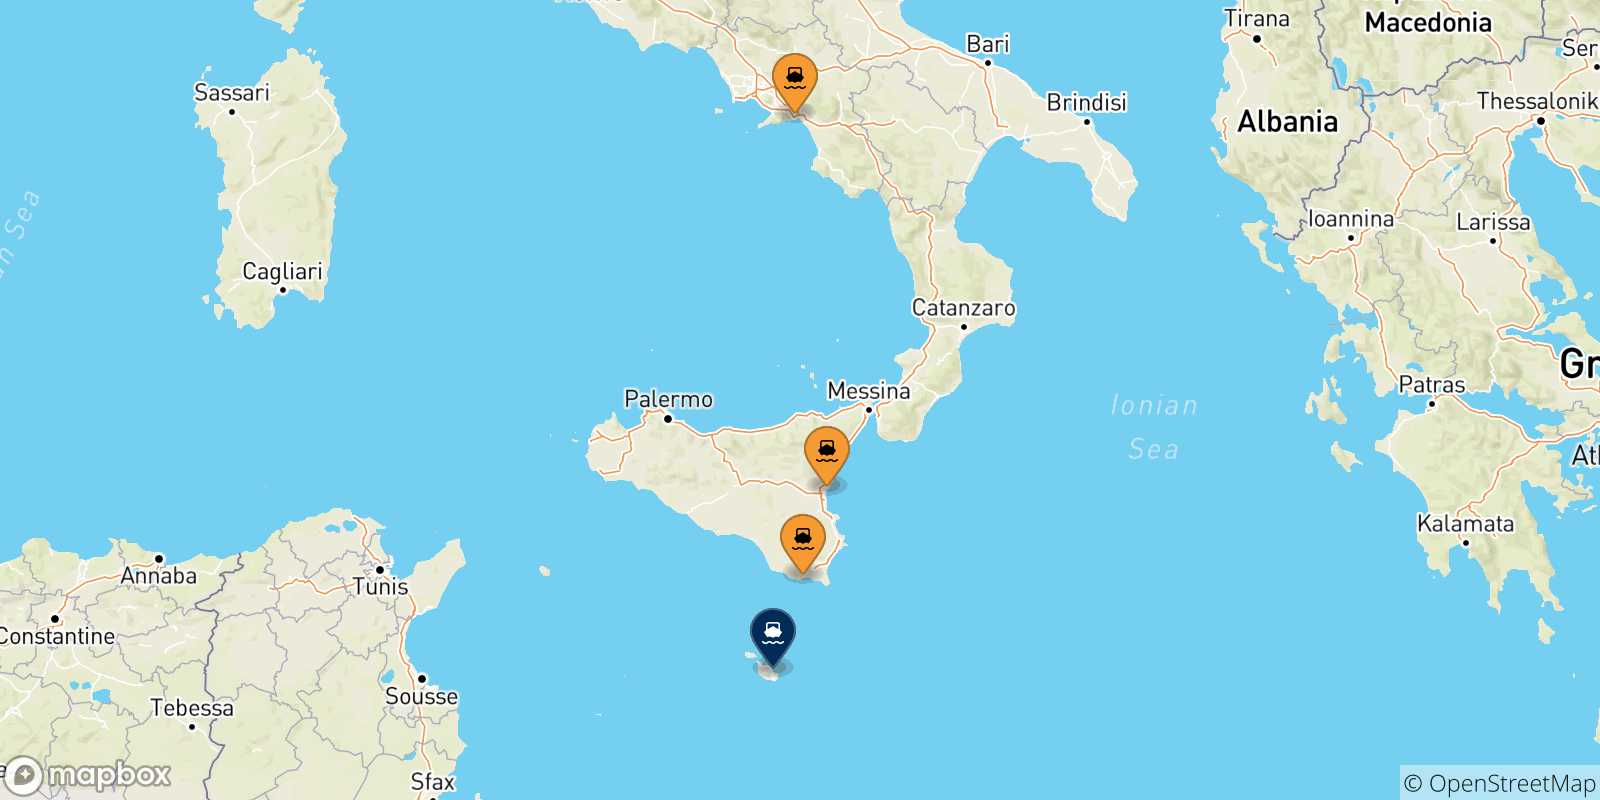 Mappa delle possibili rotte tra l'Italia e Malta